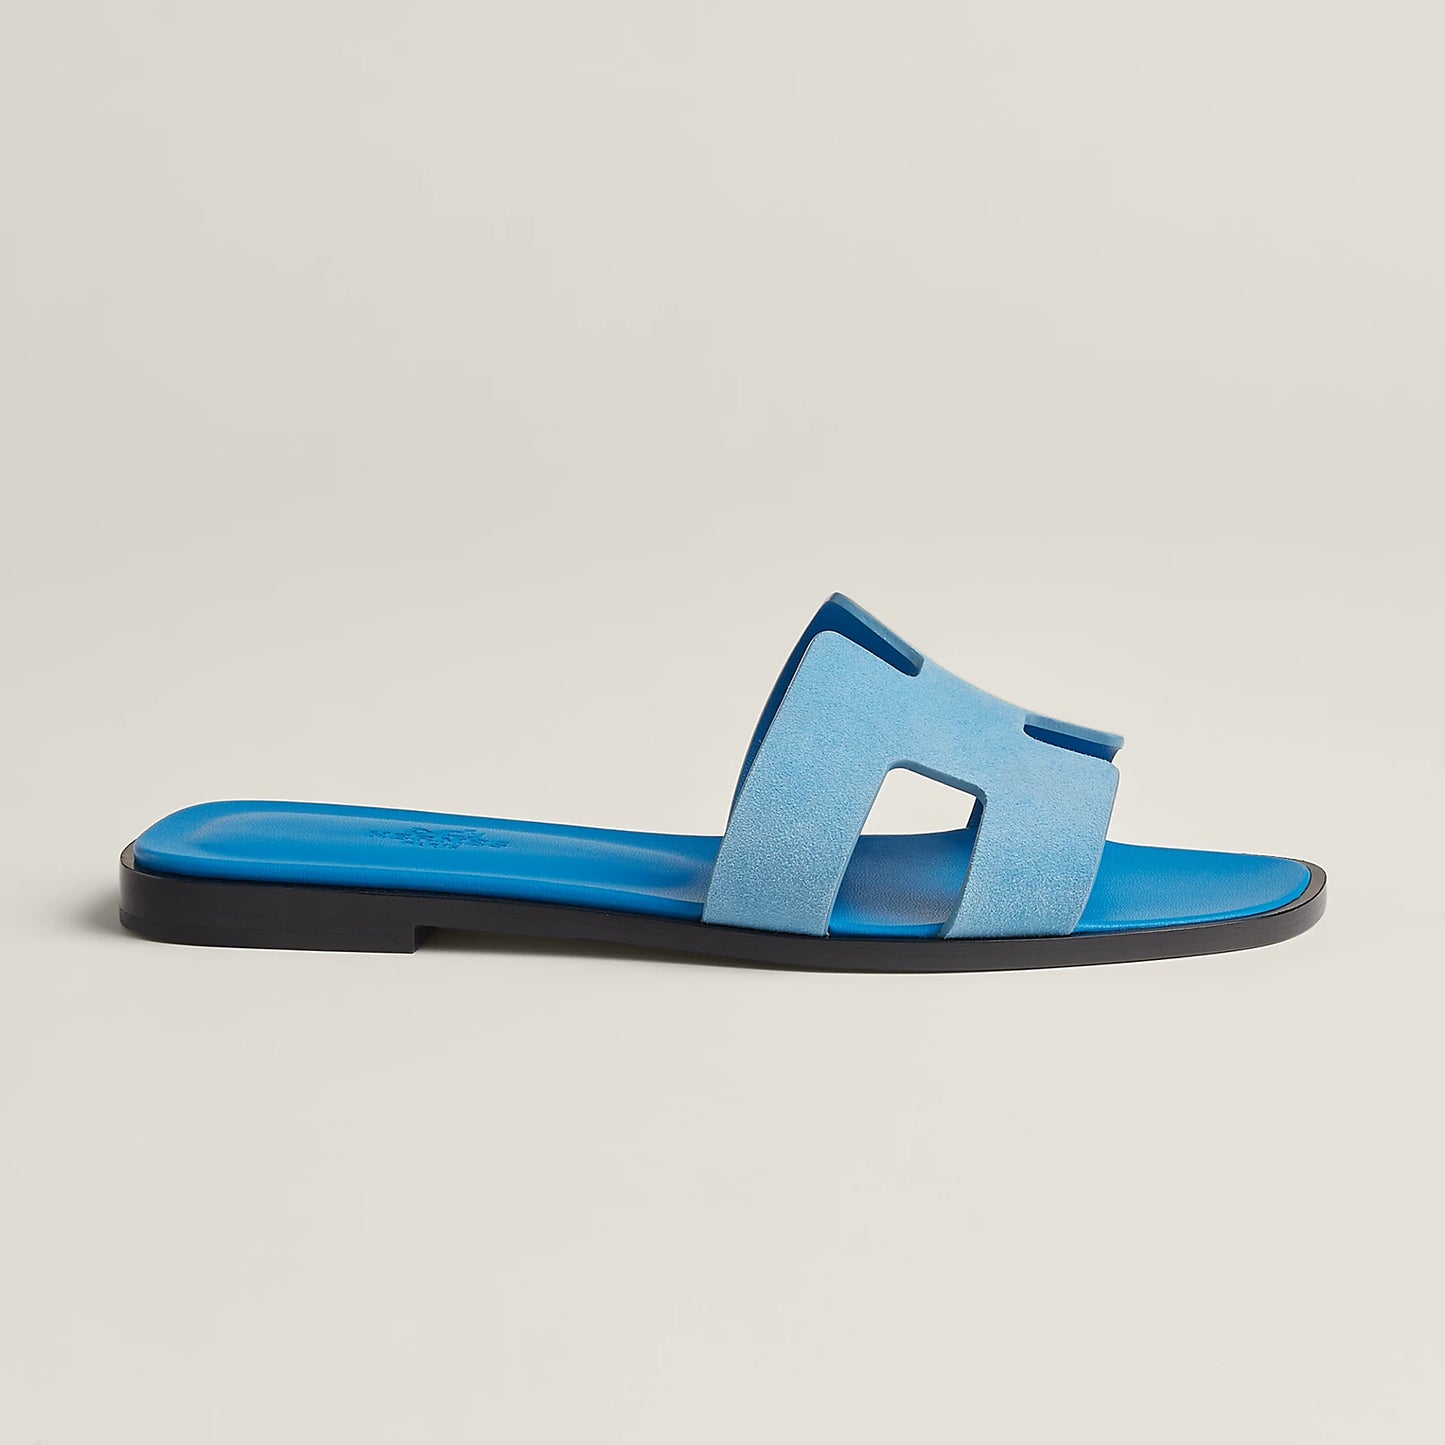 Hermes Oran Sandal “Bleu Cameo”